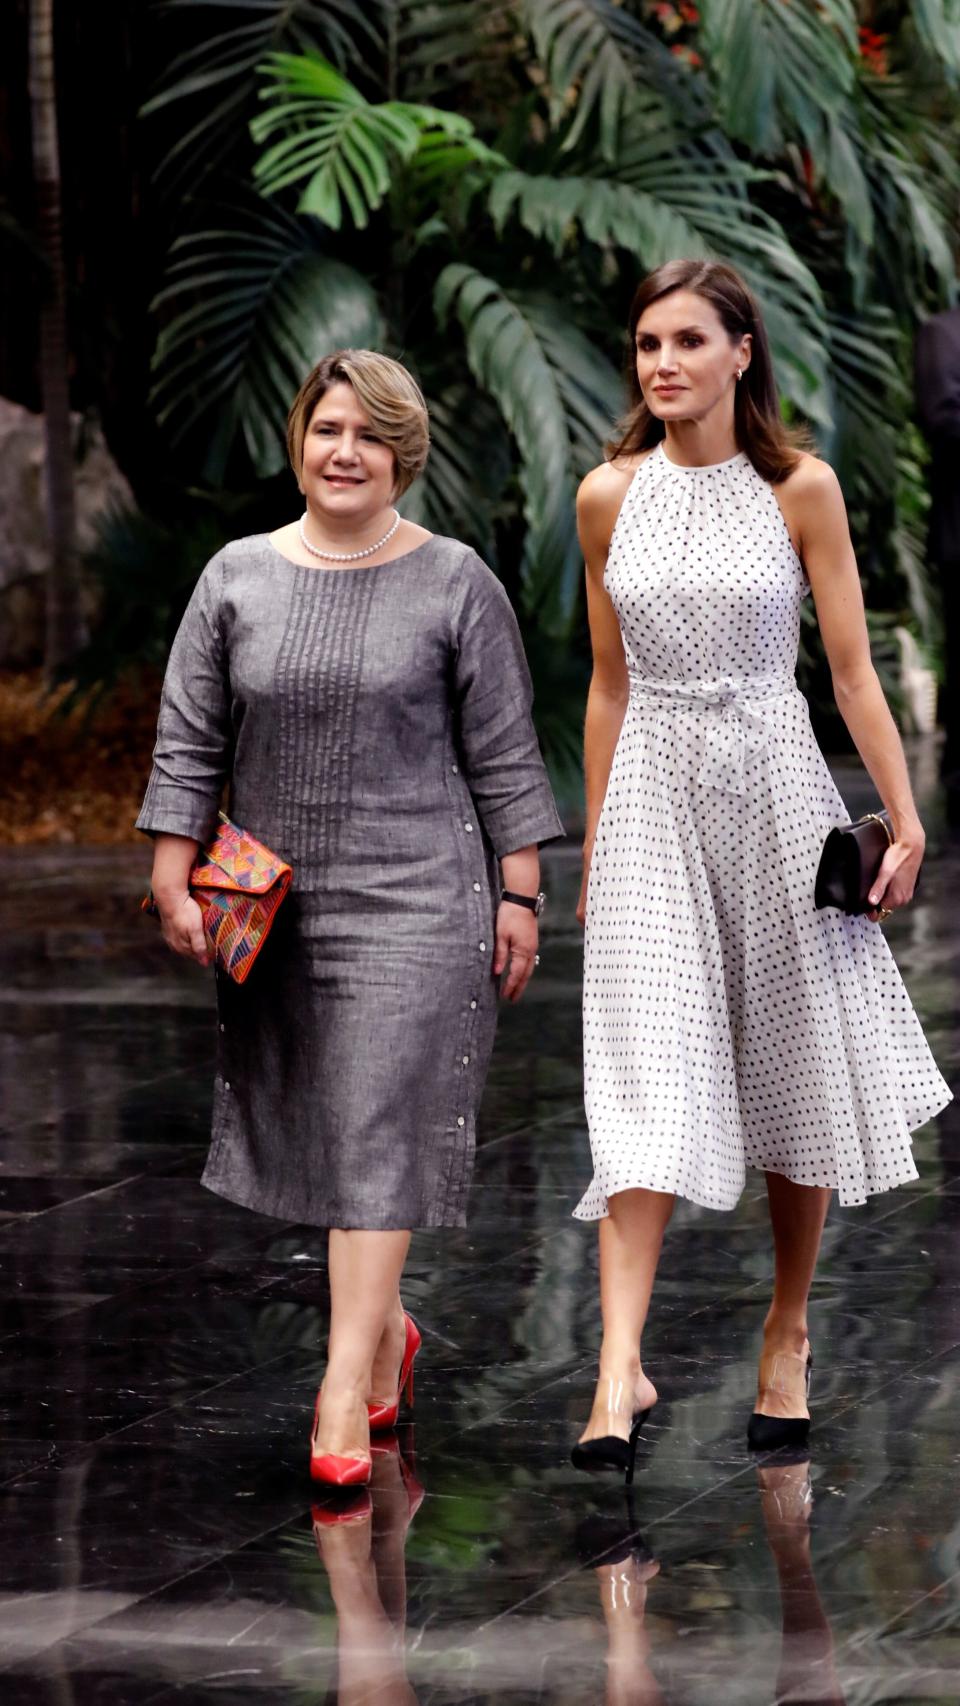 La reina Letizia ha vuelto a lucir el vestido con el que visitó República Dominicana.